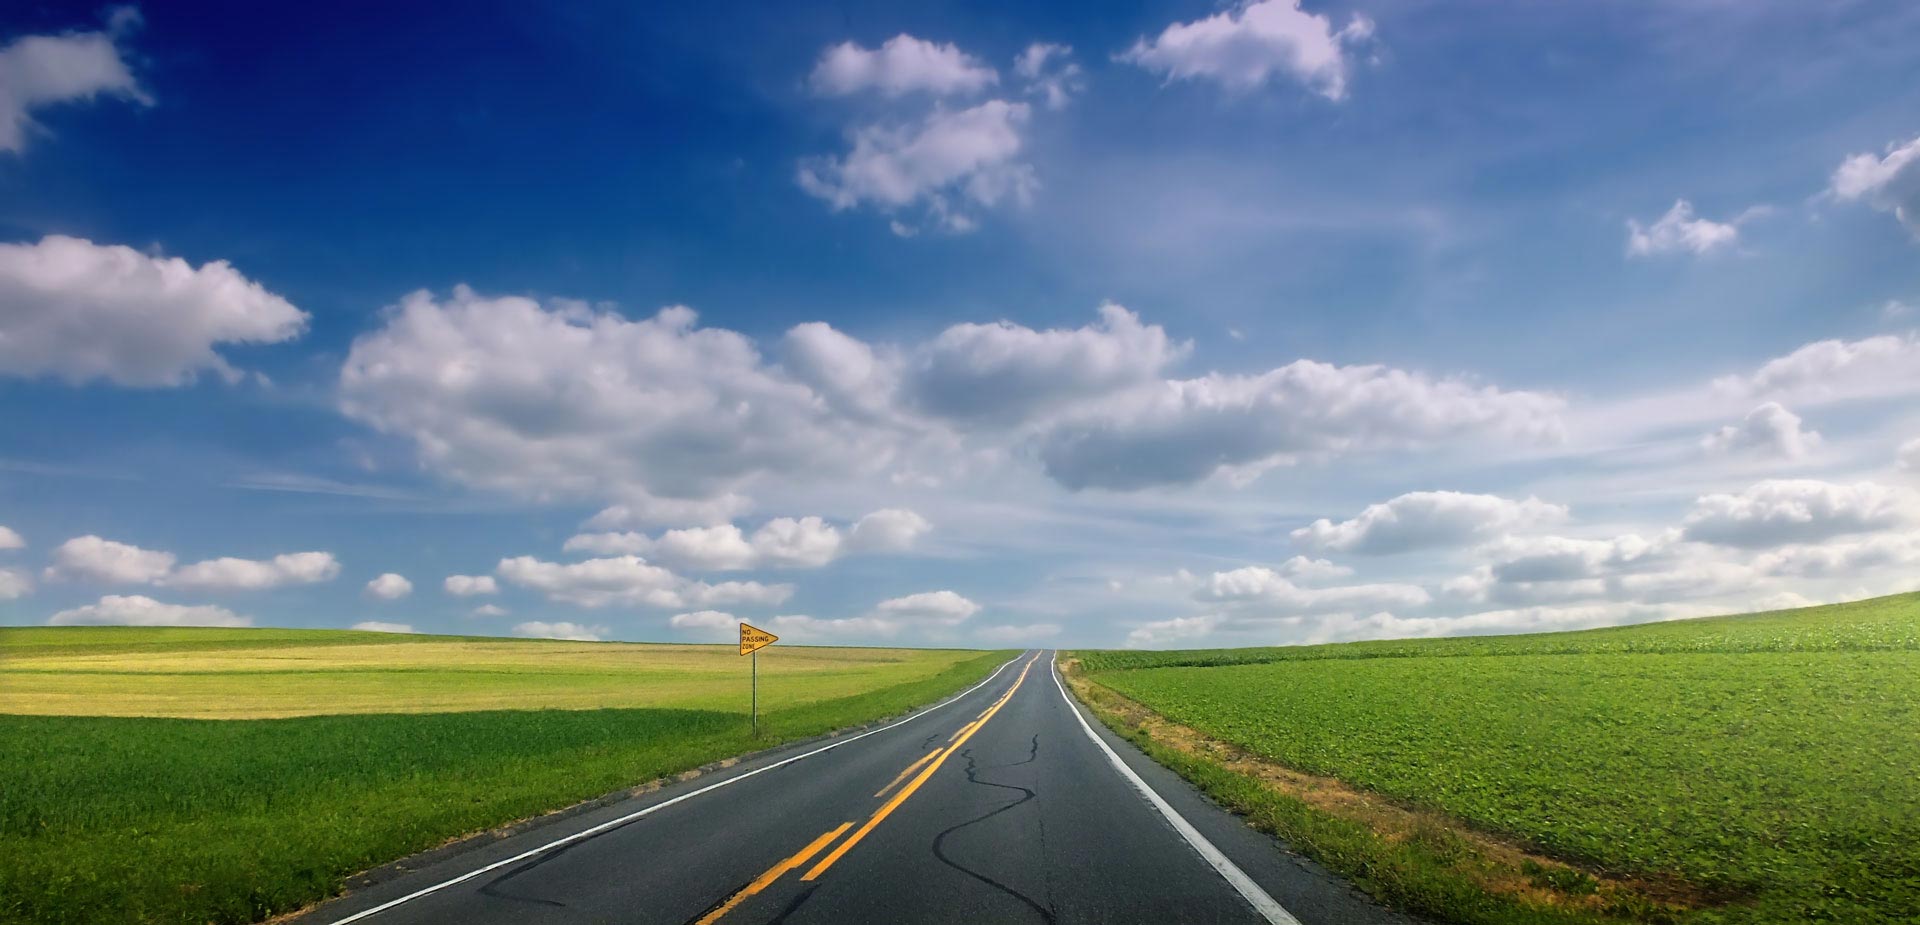 A road in the prairie